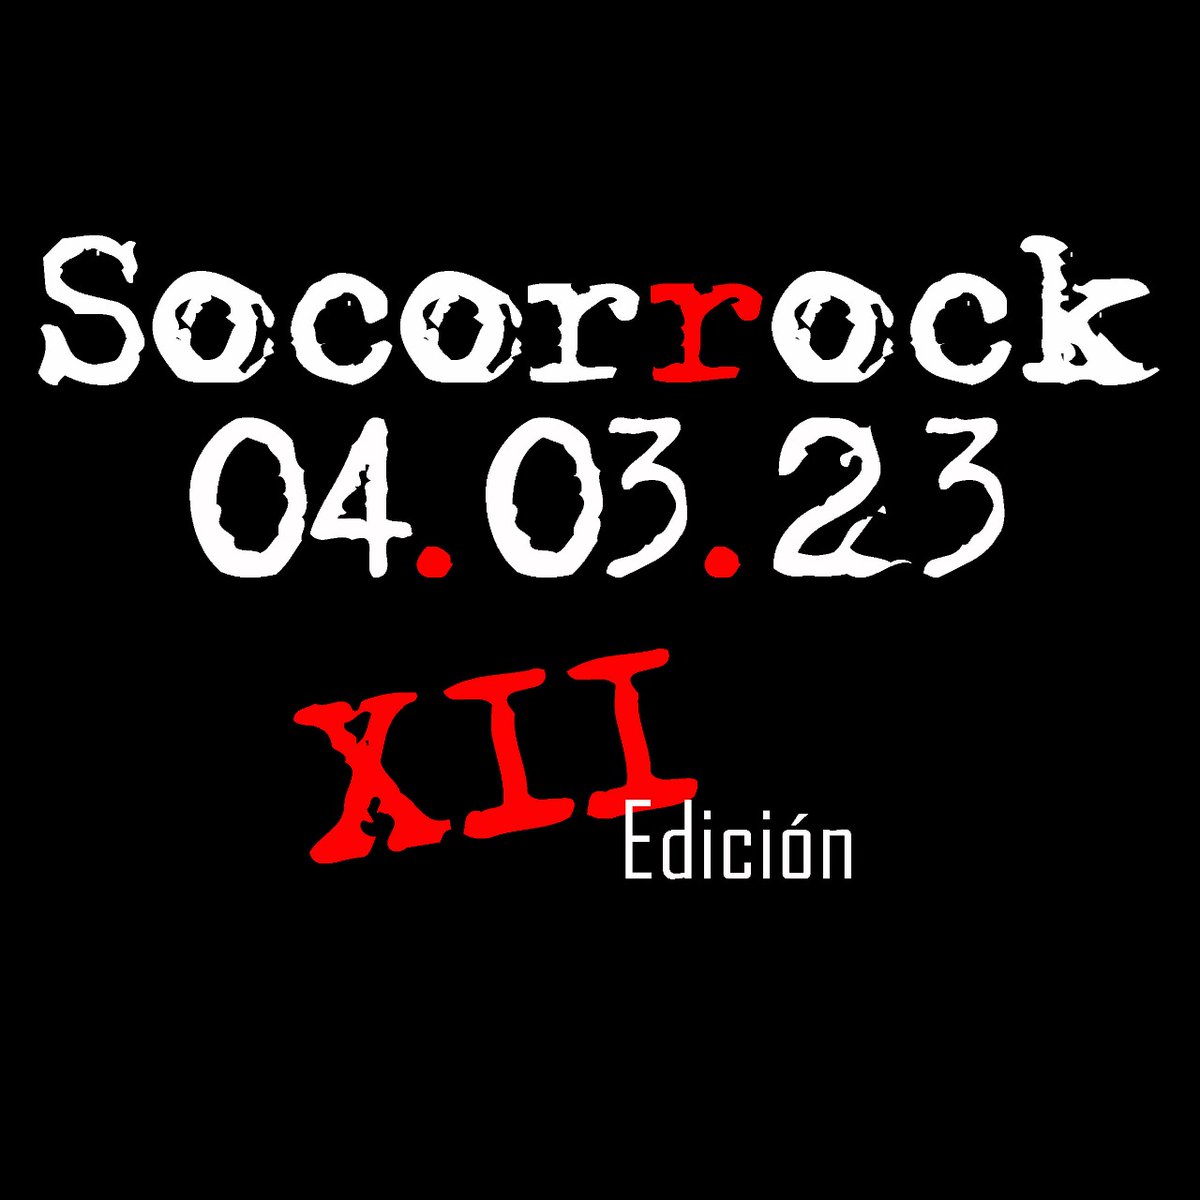 Sábado 4 de marzo!!!
Vuelve el rock al aire libre!!
Vuelve el Socorrock!!
#socorrock 
#rock
#AireLibre 
#FestivalPais 
#festival